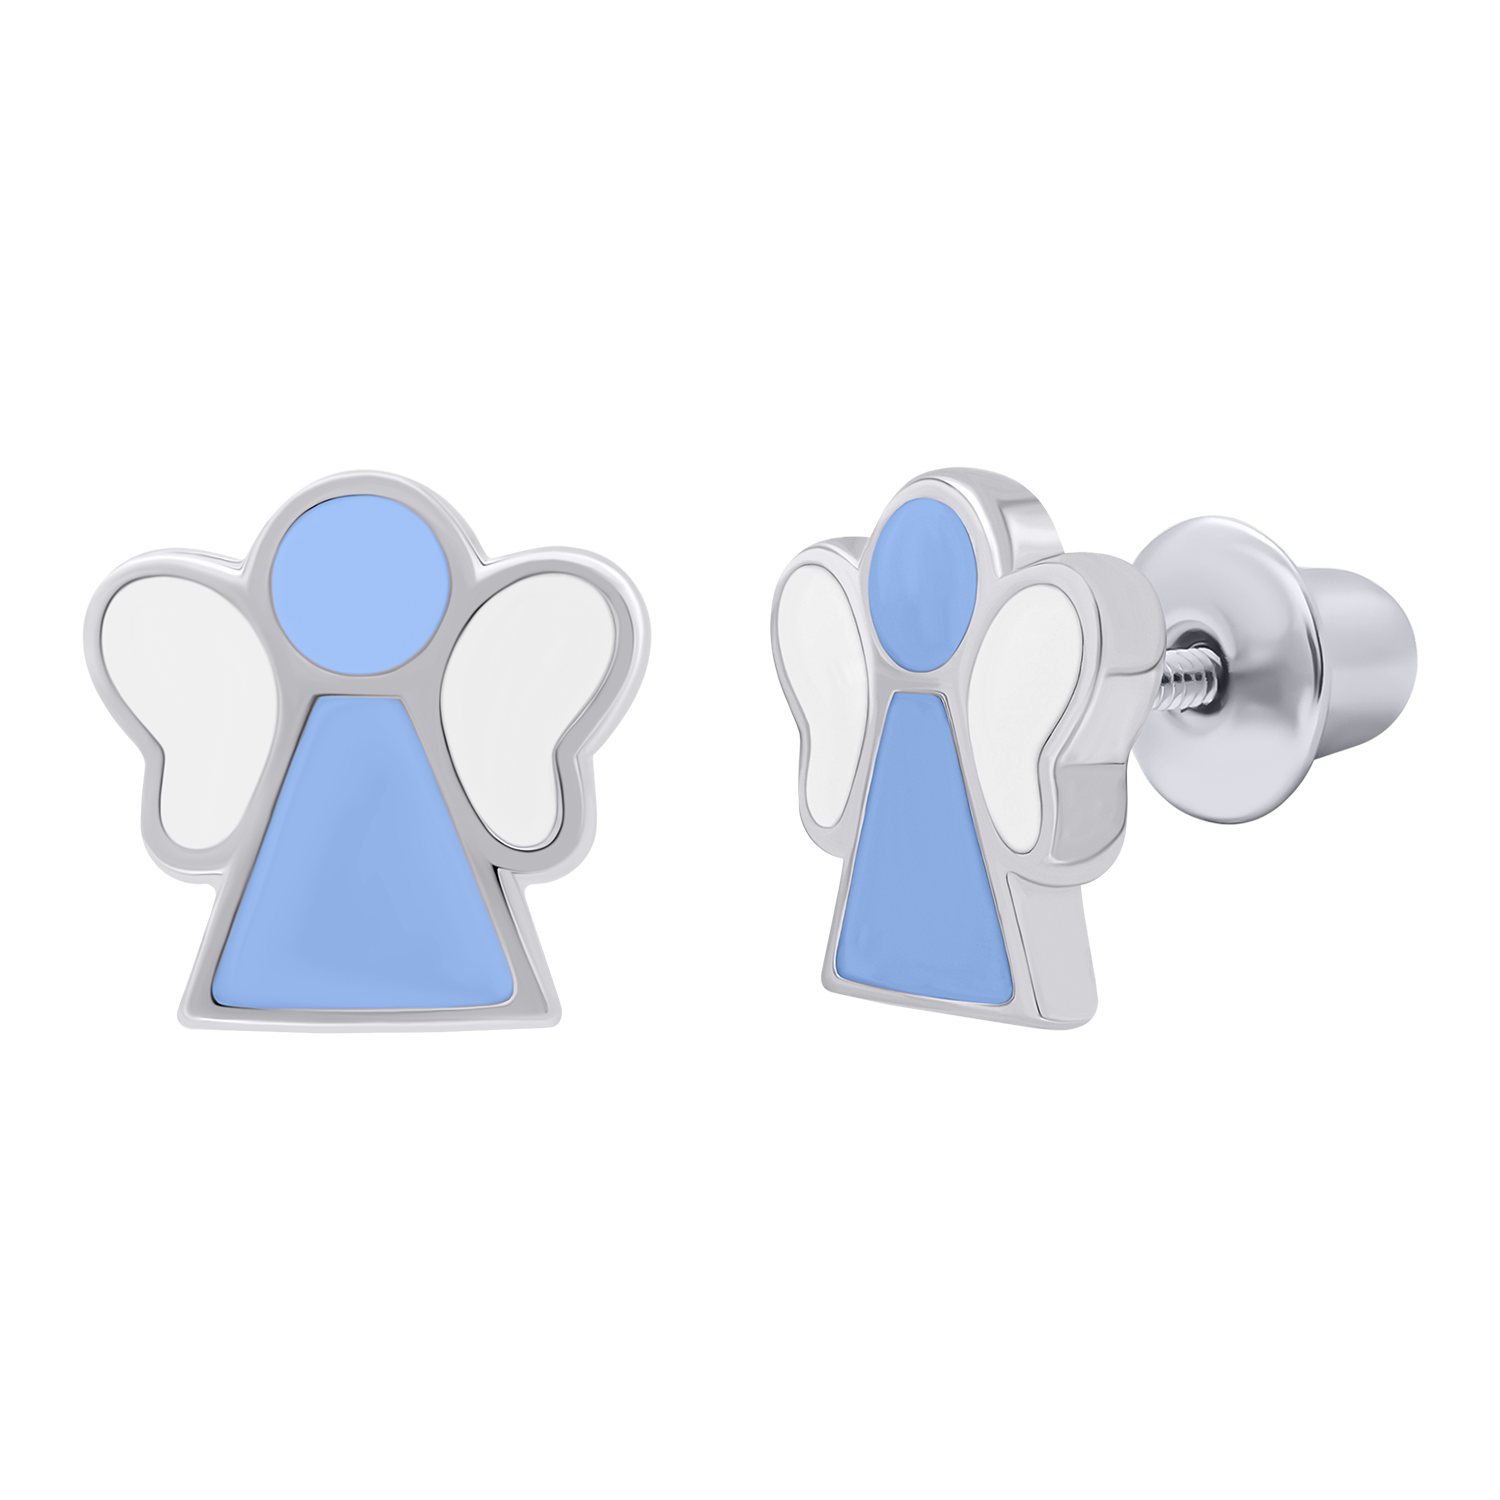 Σκουλαρίκια Αγγελάκι με μπλε και λευκό σμάλτο